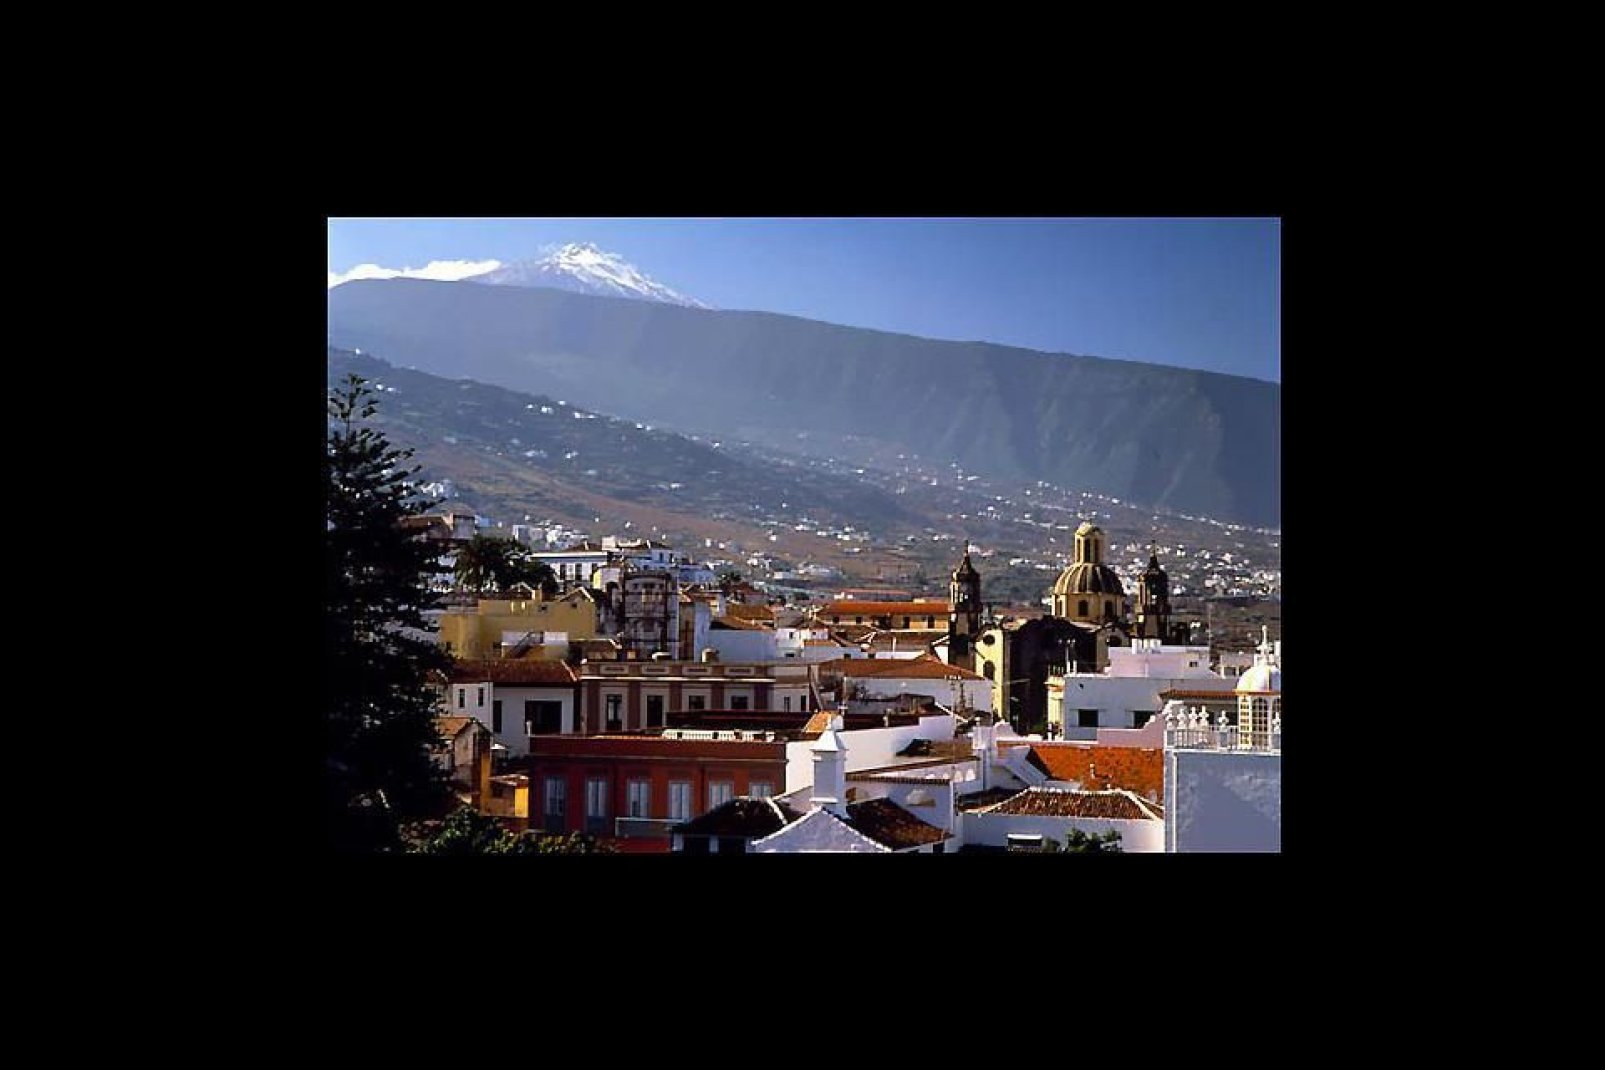 La localidad de La Orotava se encuentra ubicada en el fértil valle del mismo nombre. ALa antigua capital del país guanche, es una de las ciudades más bellas de Tenerife.